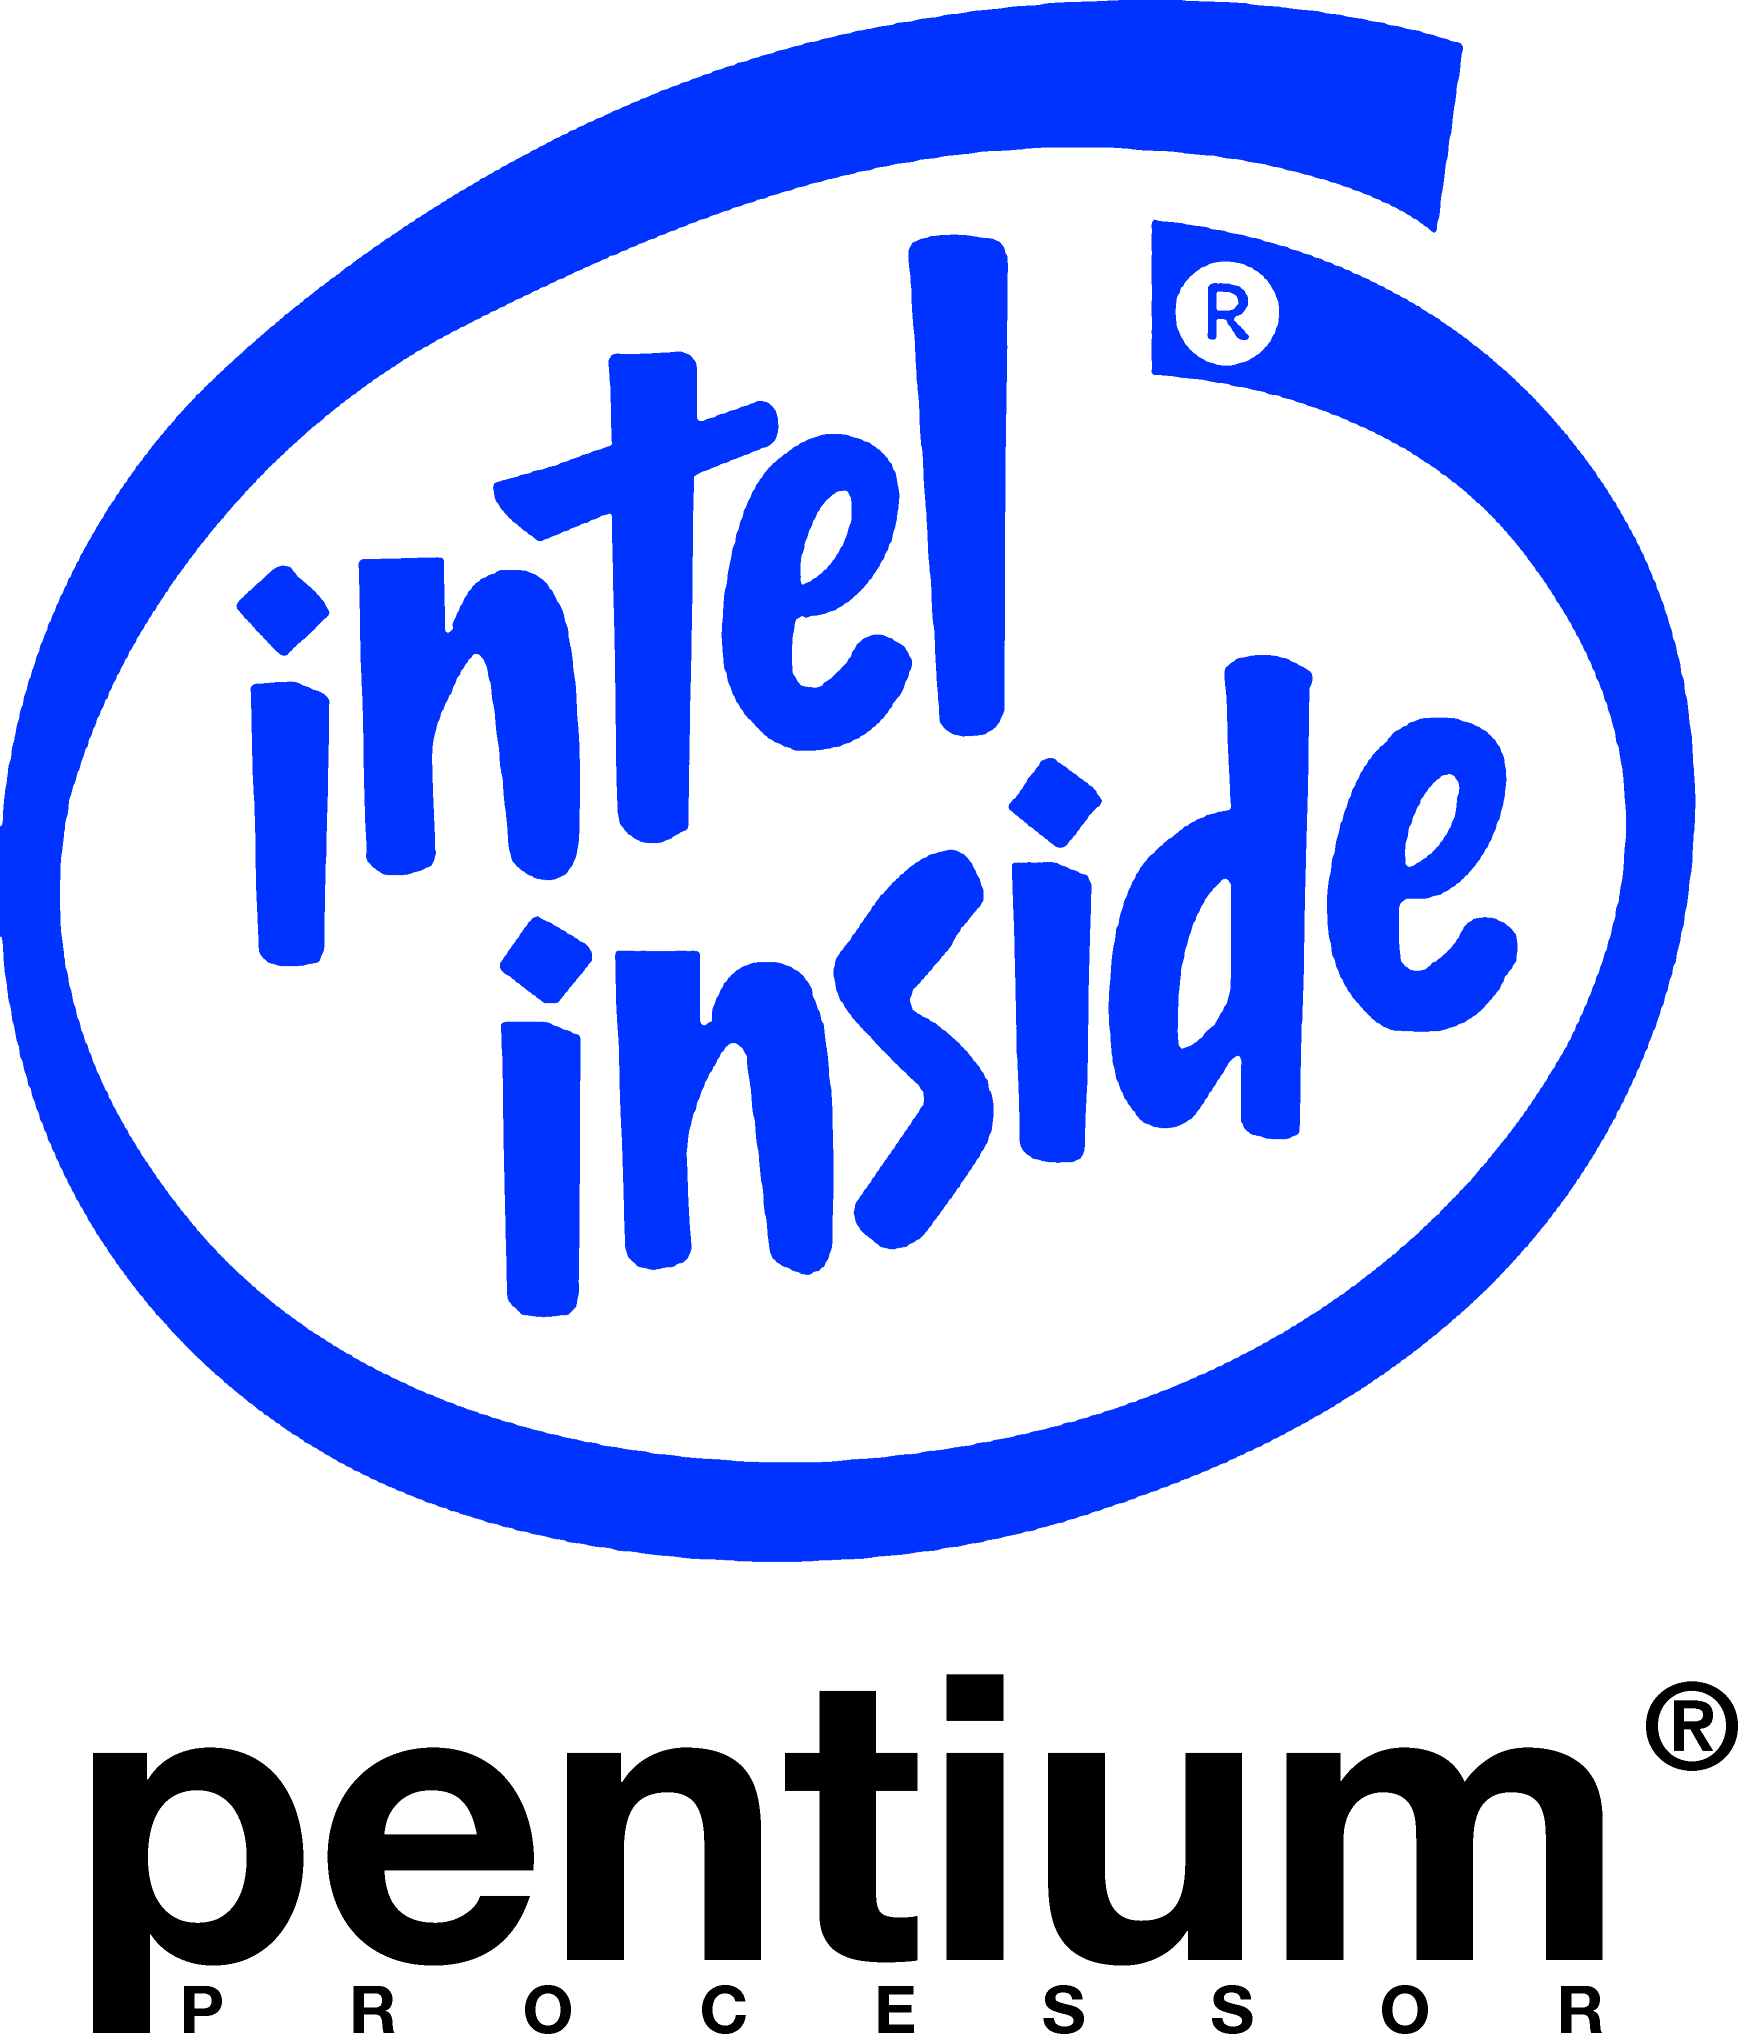 Pentium Logo - Intel Pentium